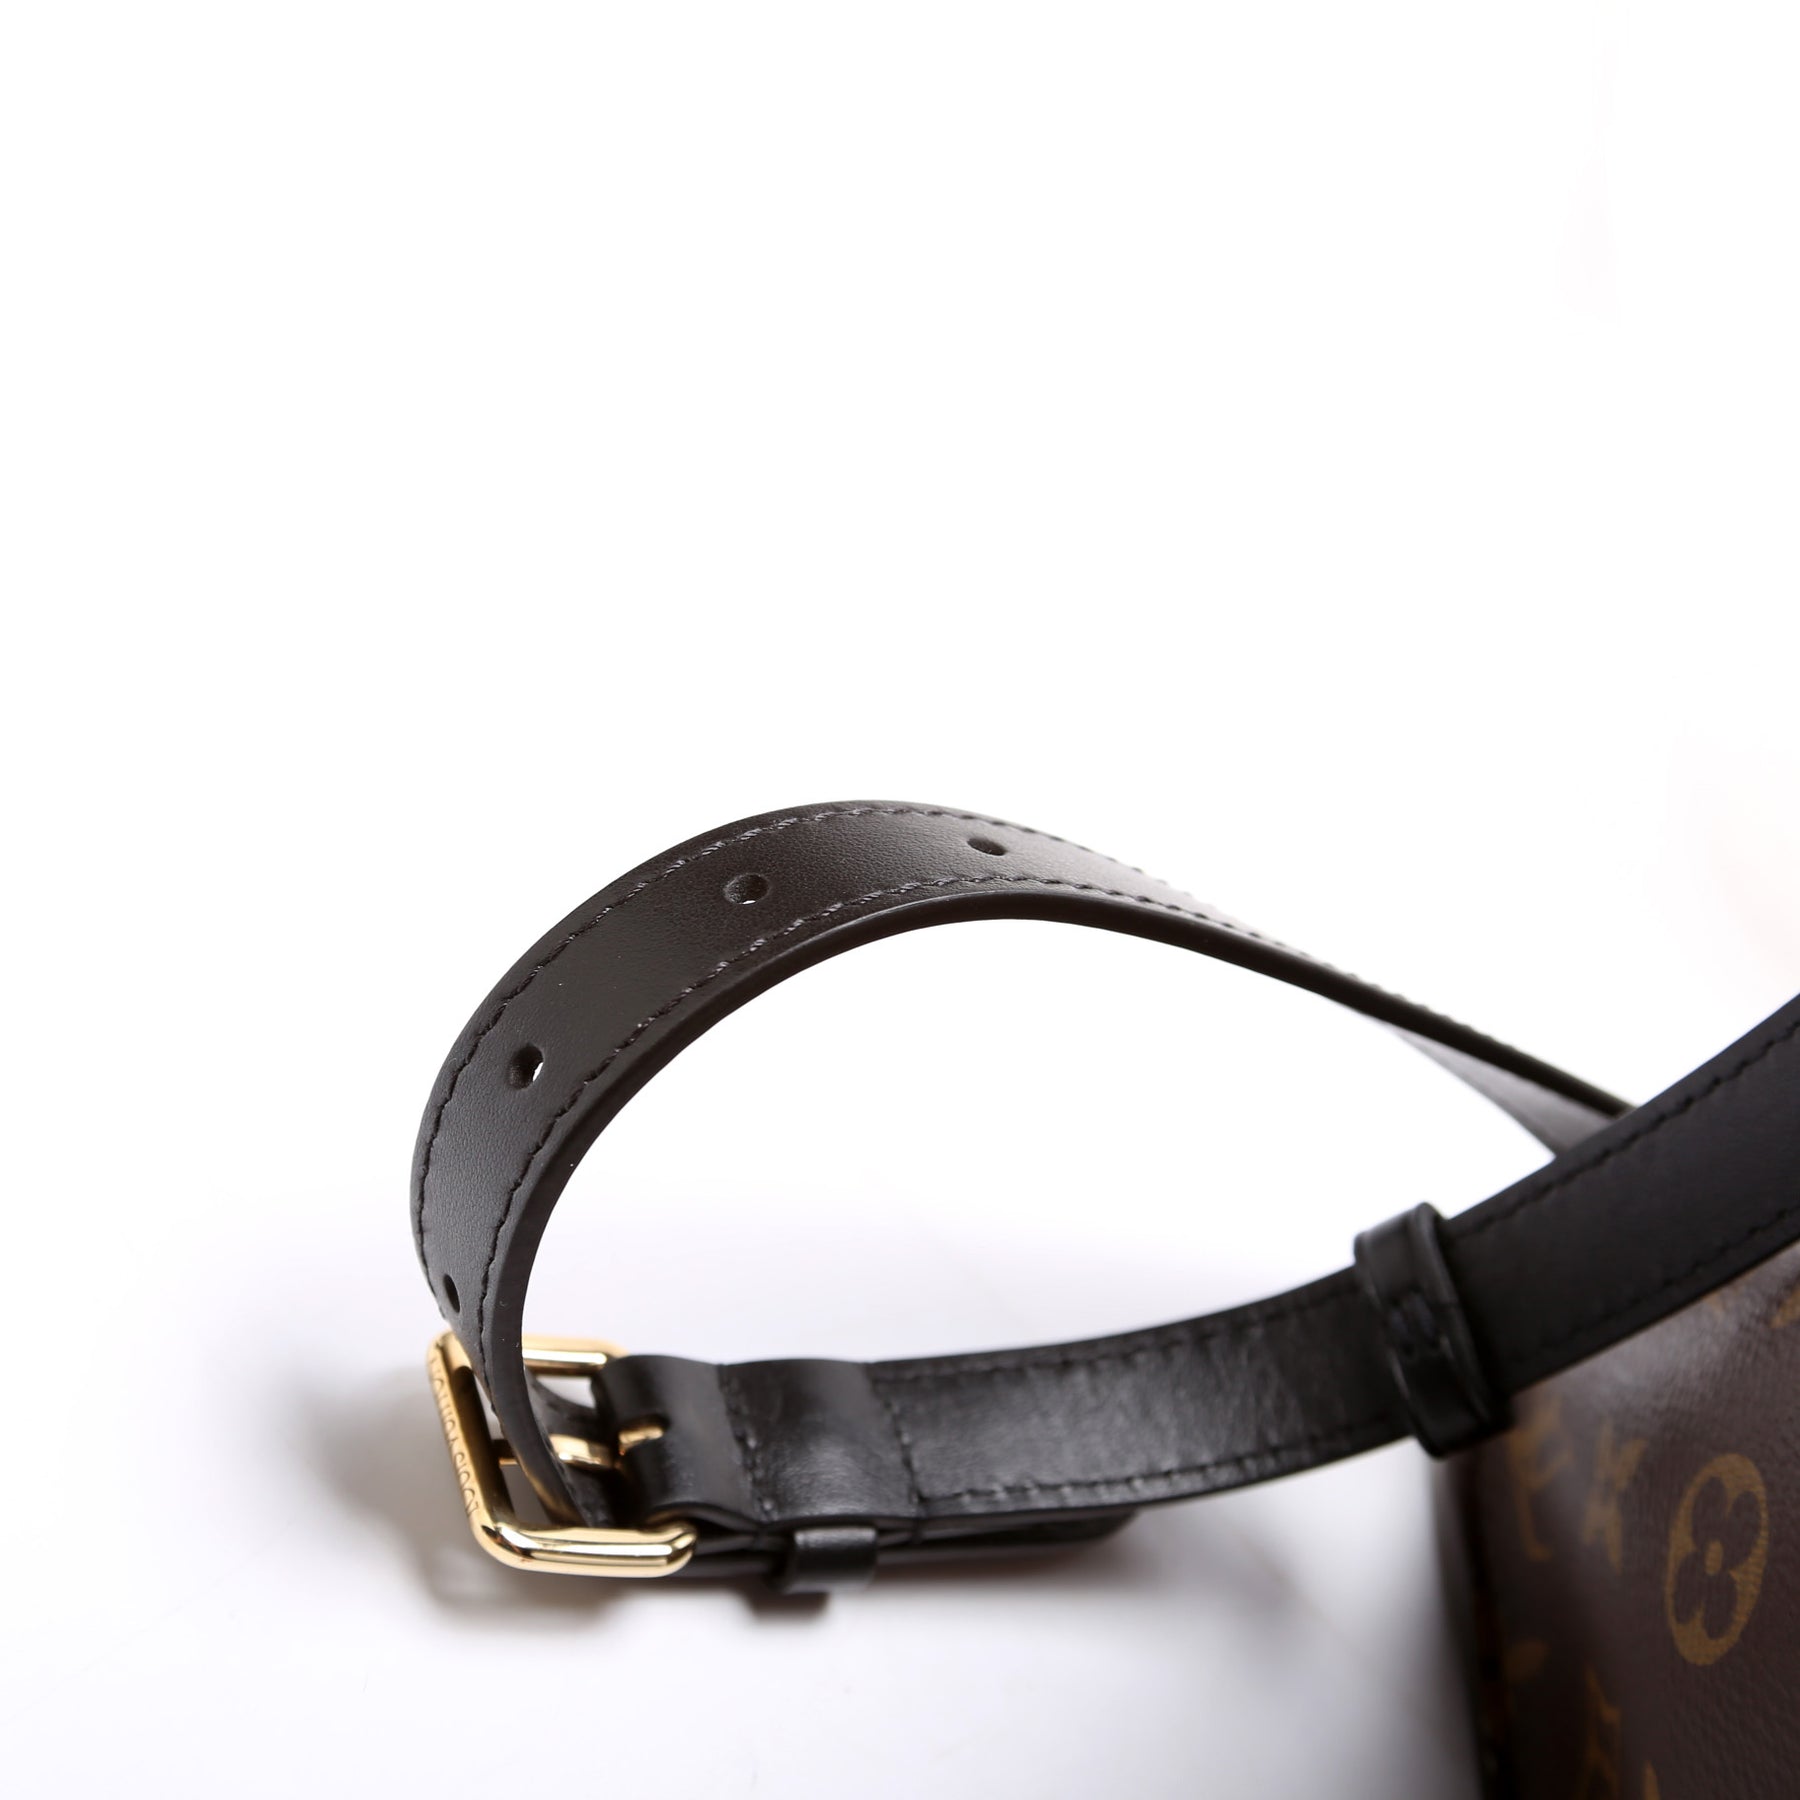 Boetie MM NM Monogram – Keeks Designer Handbags